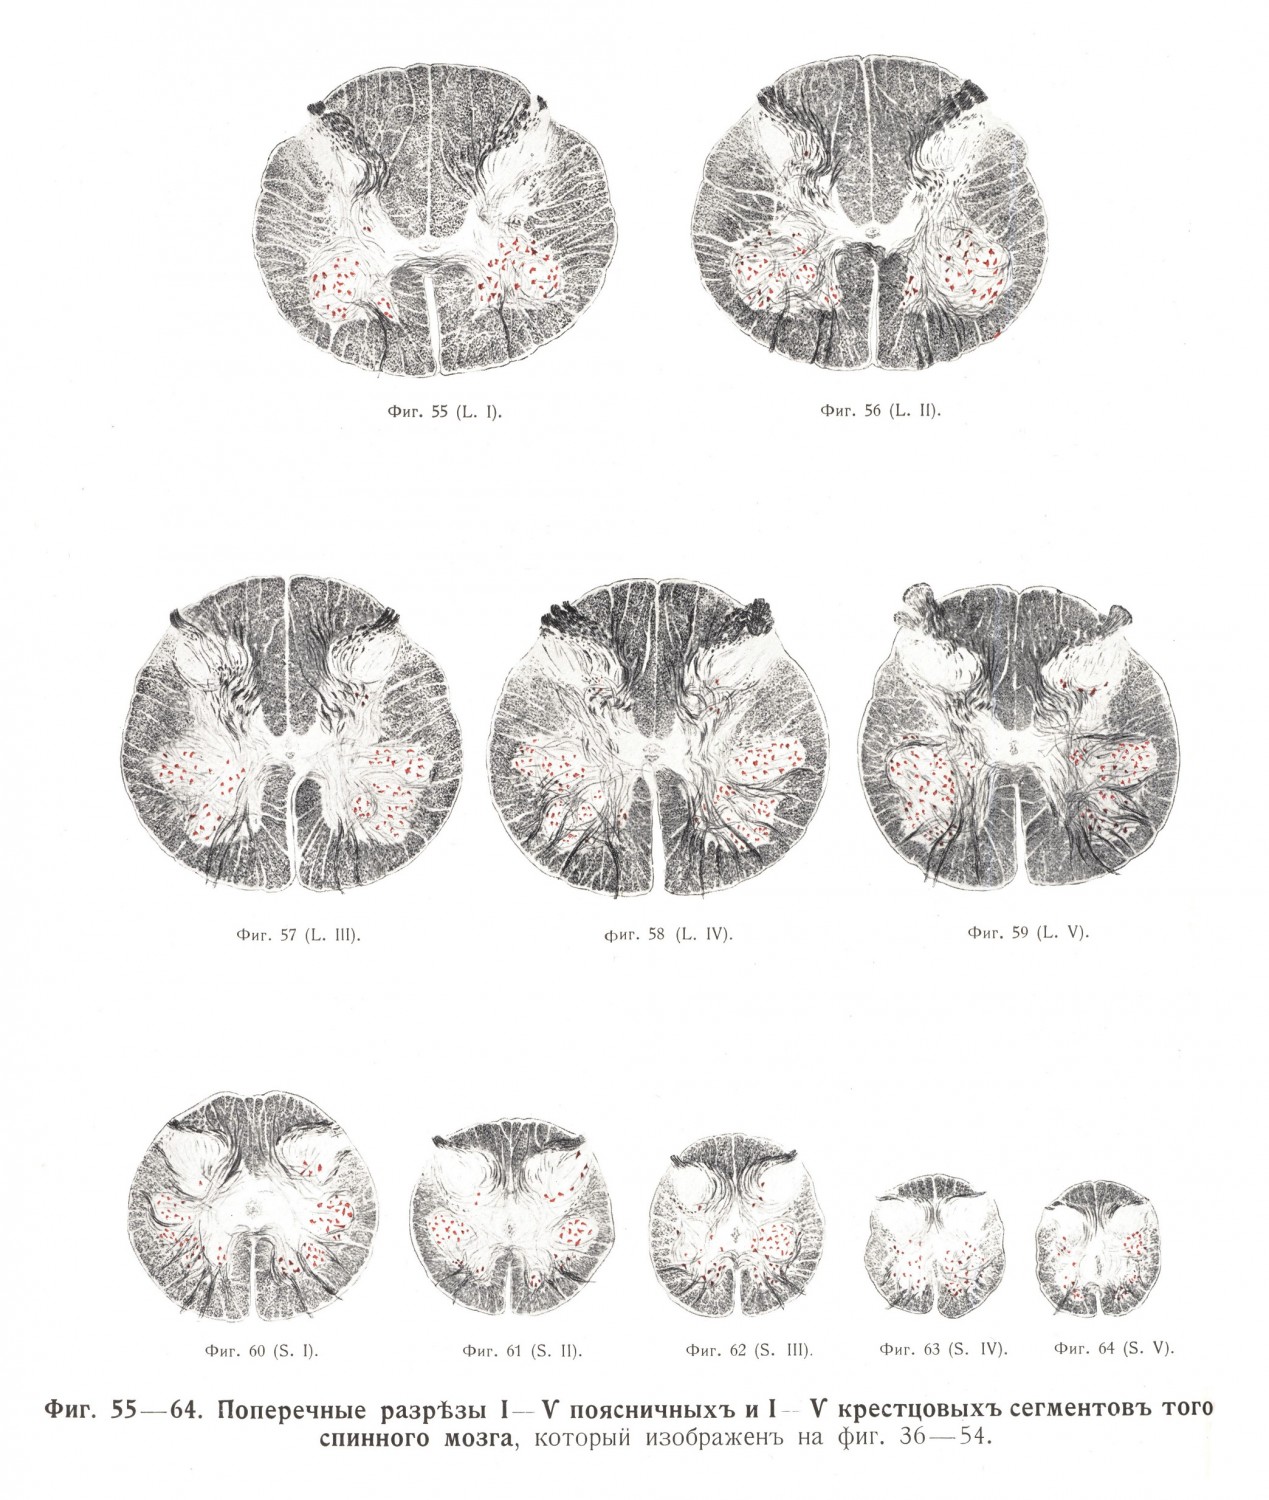 Поперечные разрезы I - V поясничного и I - V крестцового сегментов спинного мозга